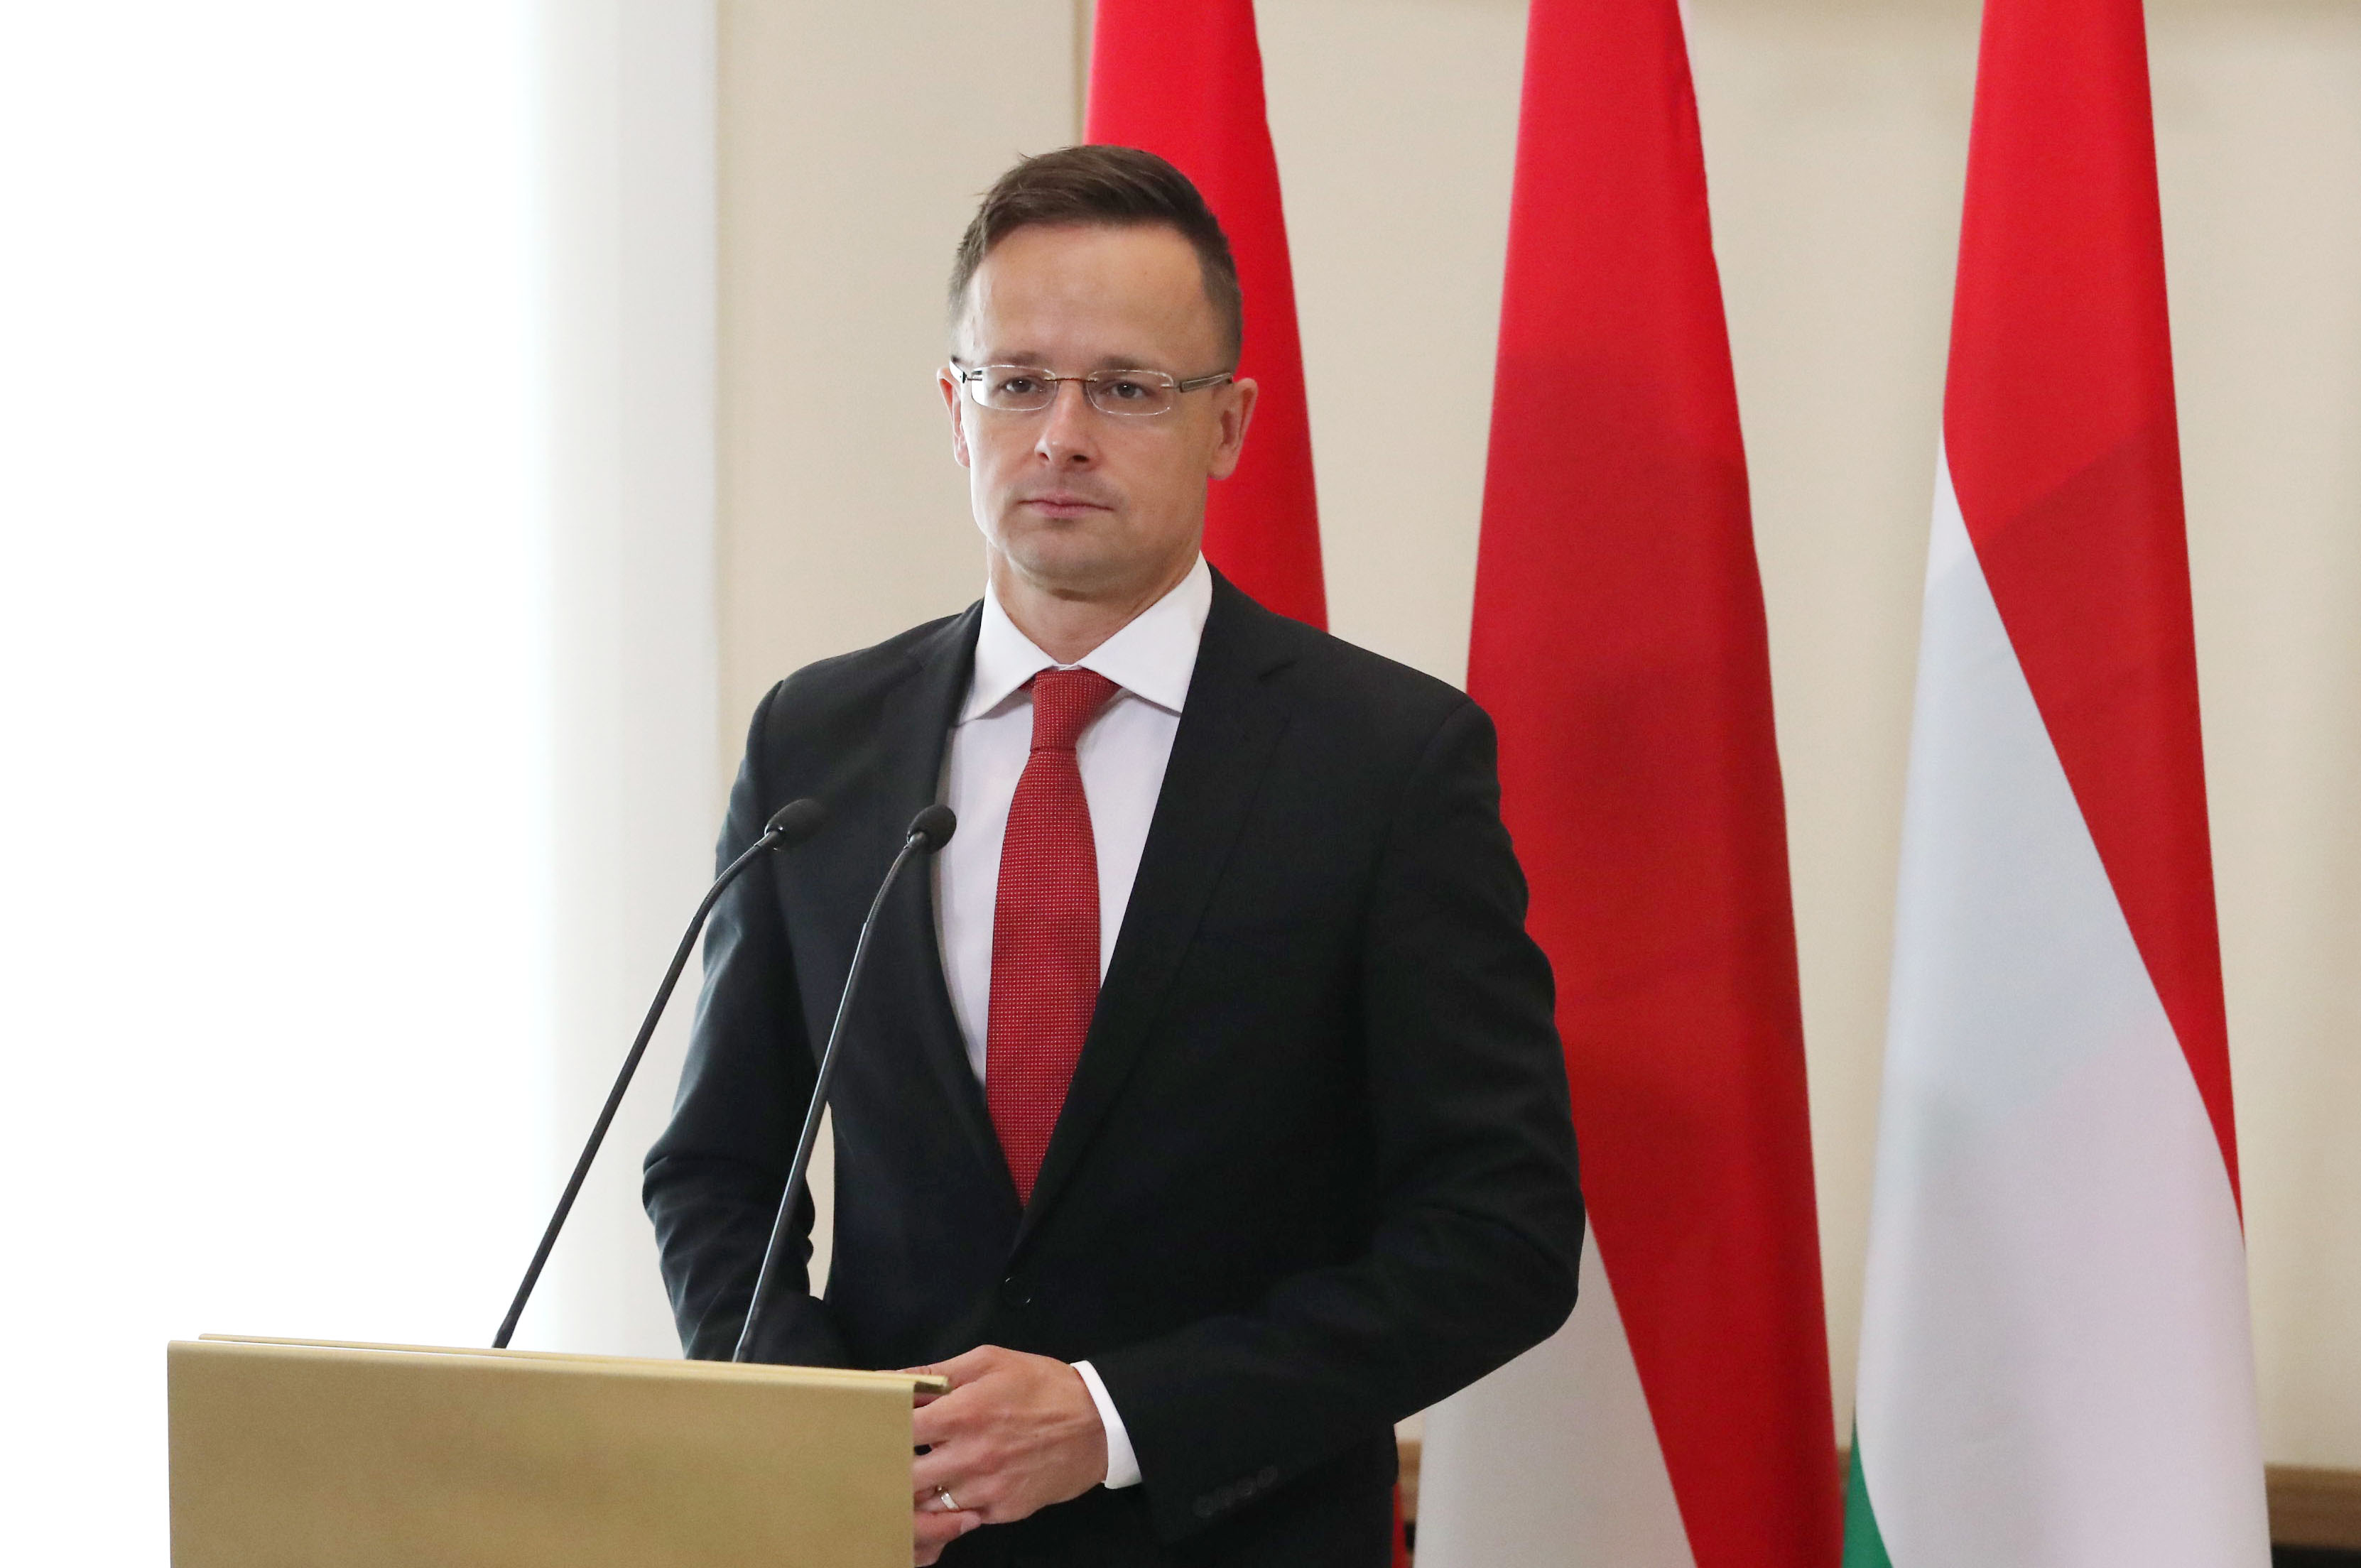 Глава МИД Венгрии Петер Сийярто: во всем мире смеются над политикой европейских санкций против России